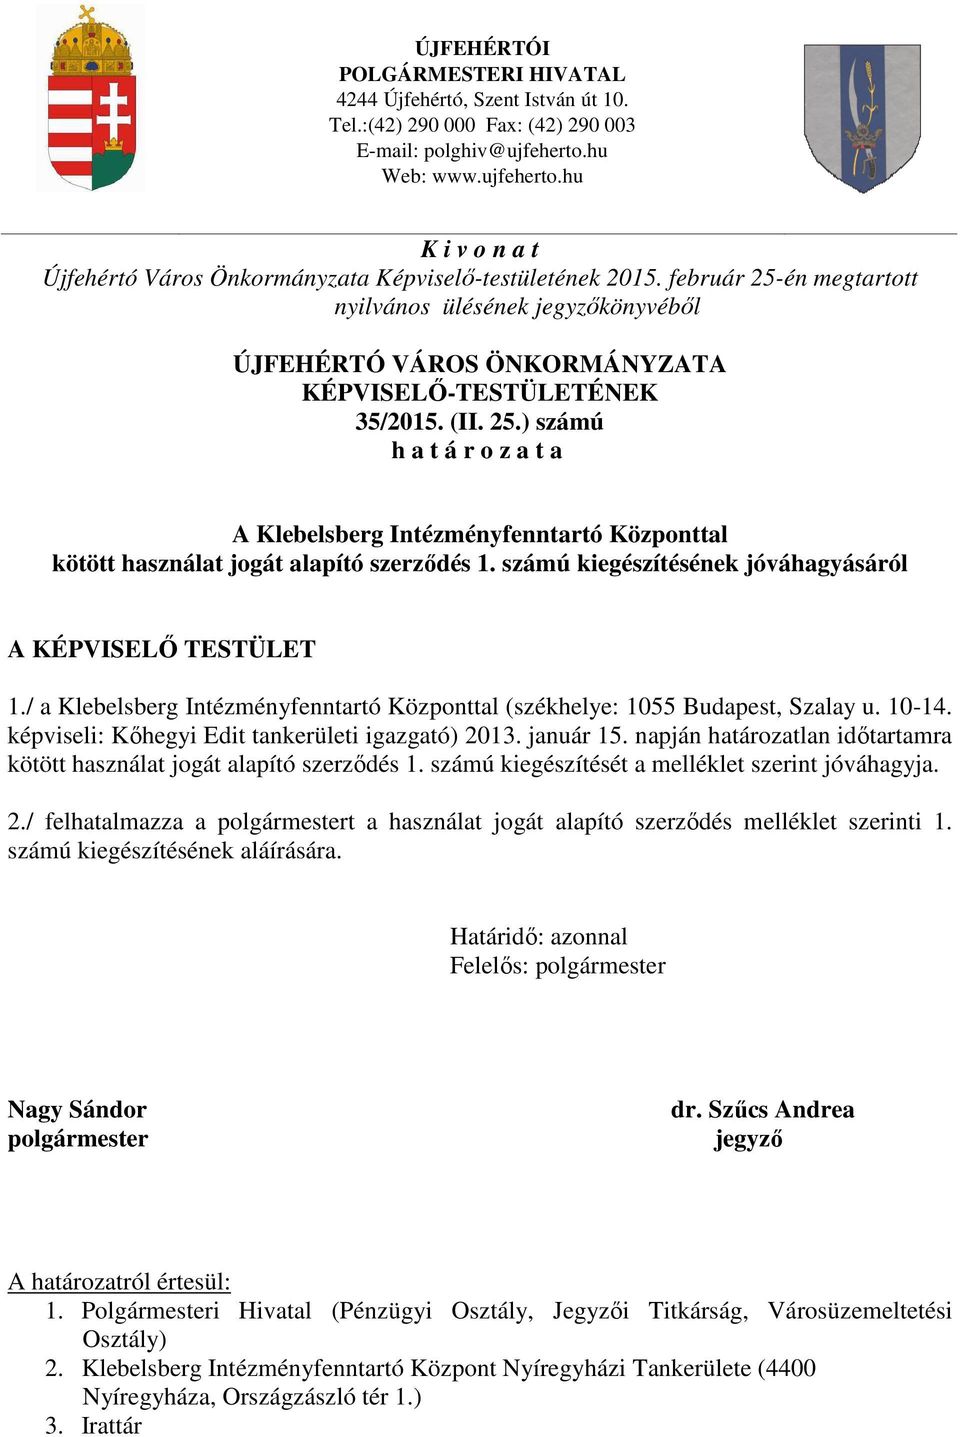 február 25-én megtartott nyilvános ülésének jegyzőkönyvéből ÚJFEHÉRTÓ VÁROS ÖNKORMÁNYZATA KÉPVISELŐ-TESTÜLETÉNEK 35/2015. (II. 25.) számú h a t á r o z a t a A Klebelsberg Intézményfenntartó Központtal kötött használat jogát alapító szerződés 1.